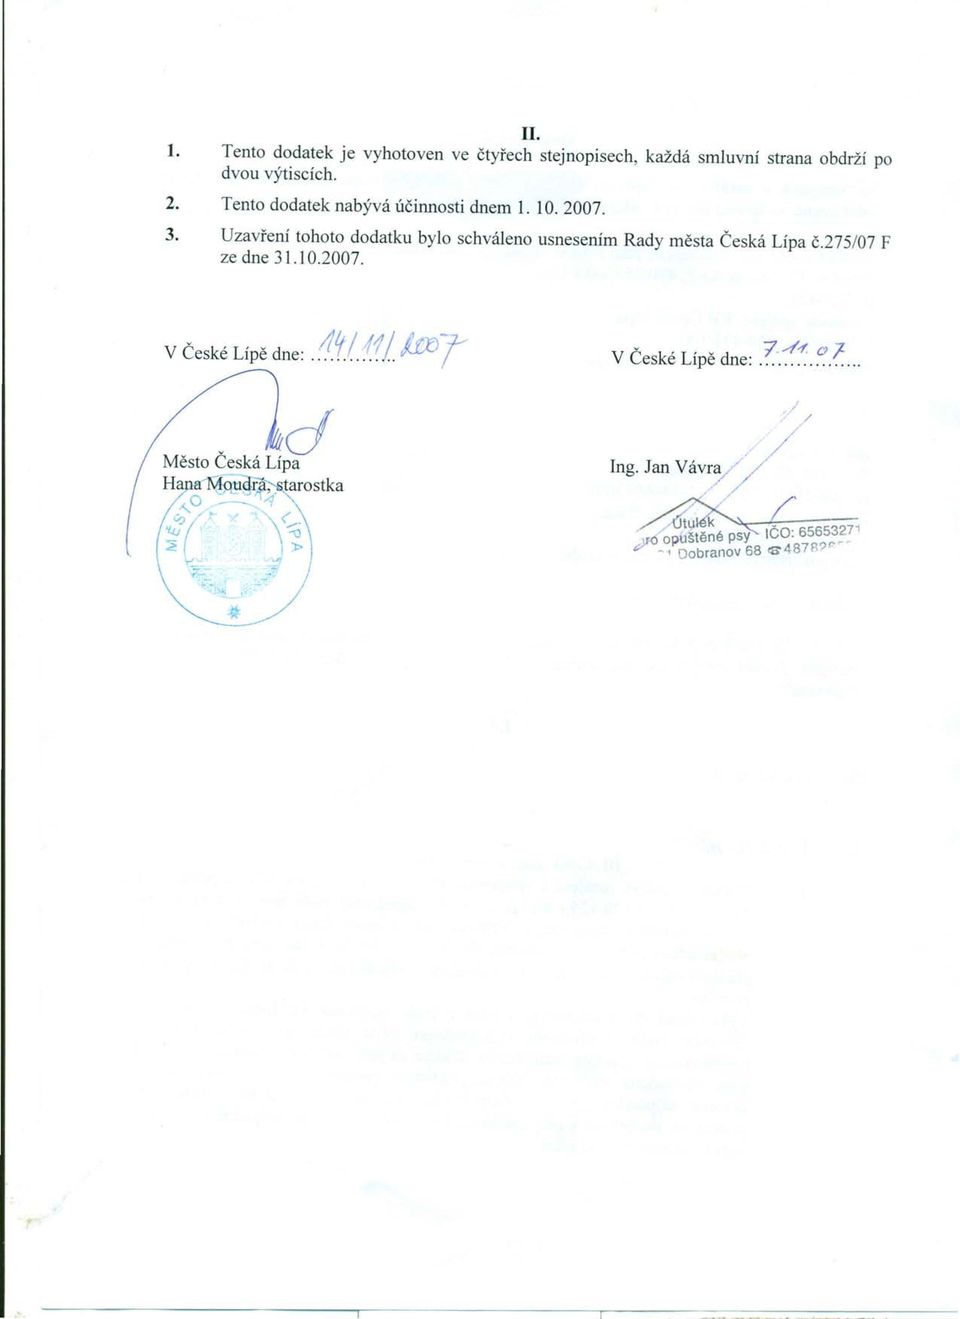 Uzvření tohoto dodtku bylo schváleno usnesením Rdy měst Česká Líp č.275/07 F ze dne 31.10.2007.